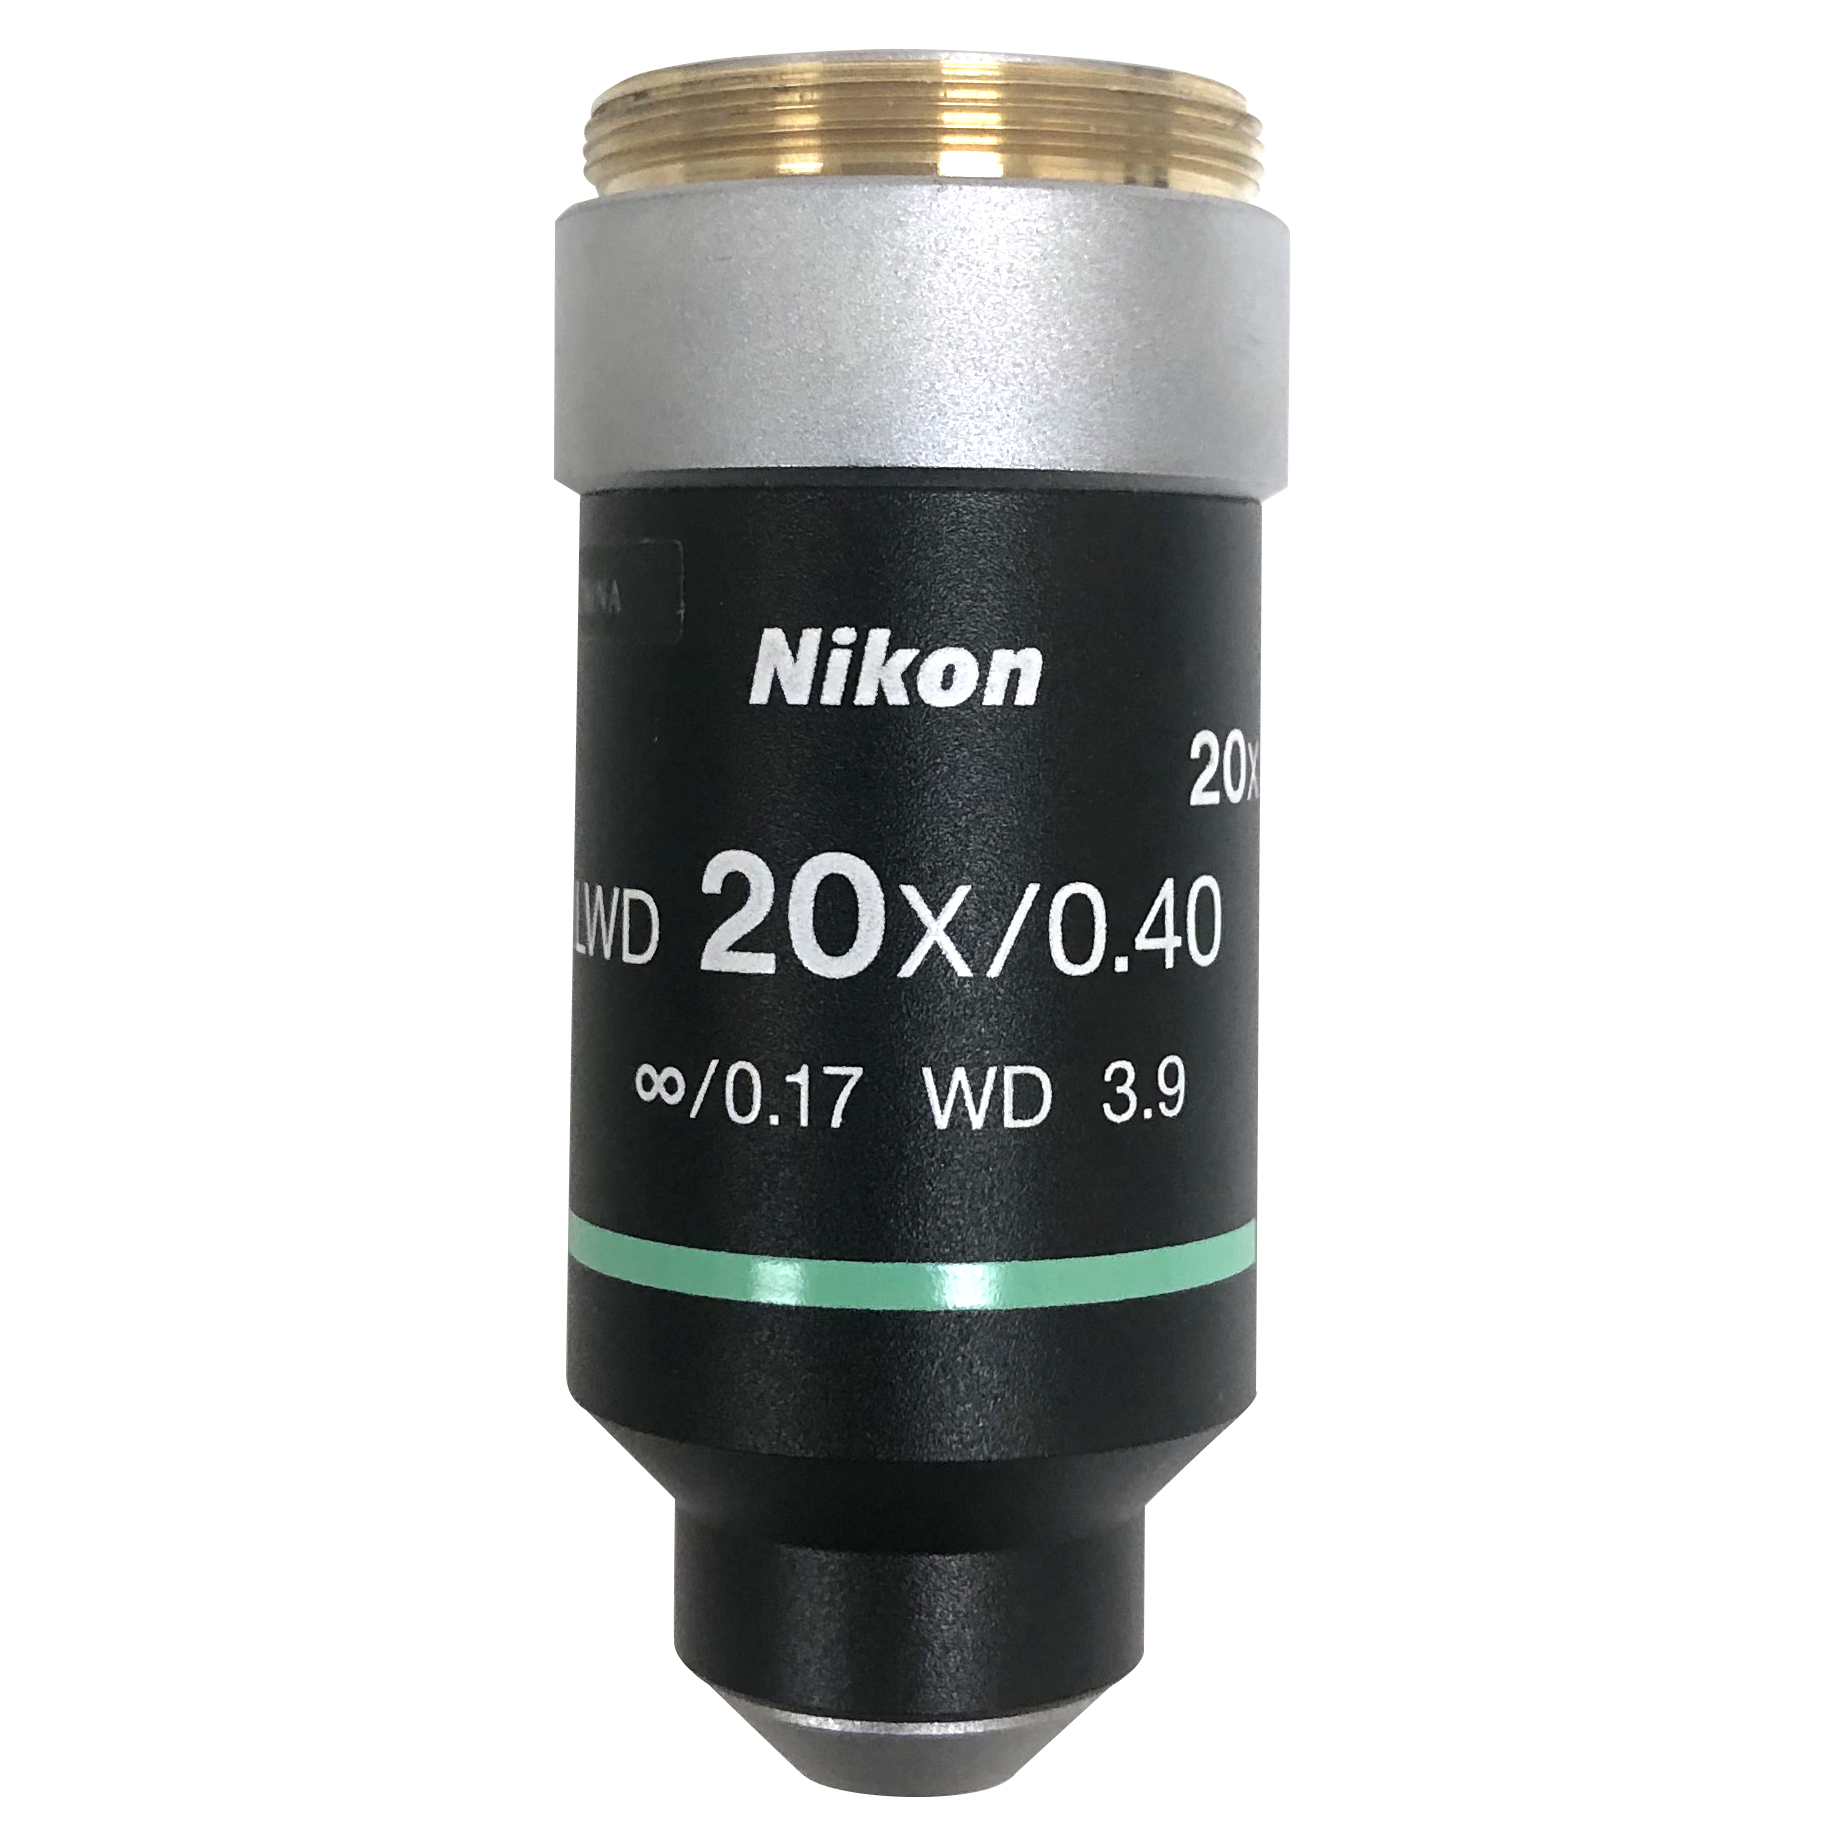 Nikon LWD 20X/0.40 w.d. 3.9 infinity microscope objective Hero